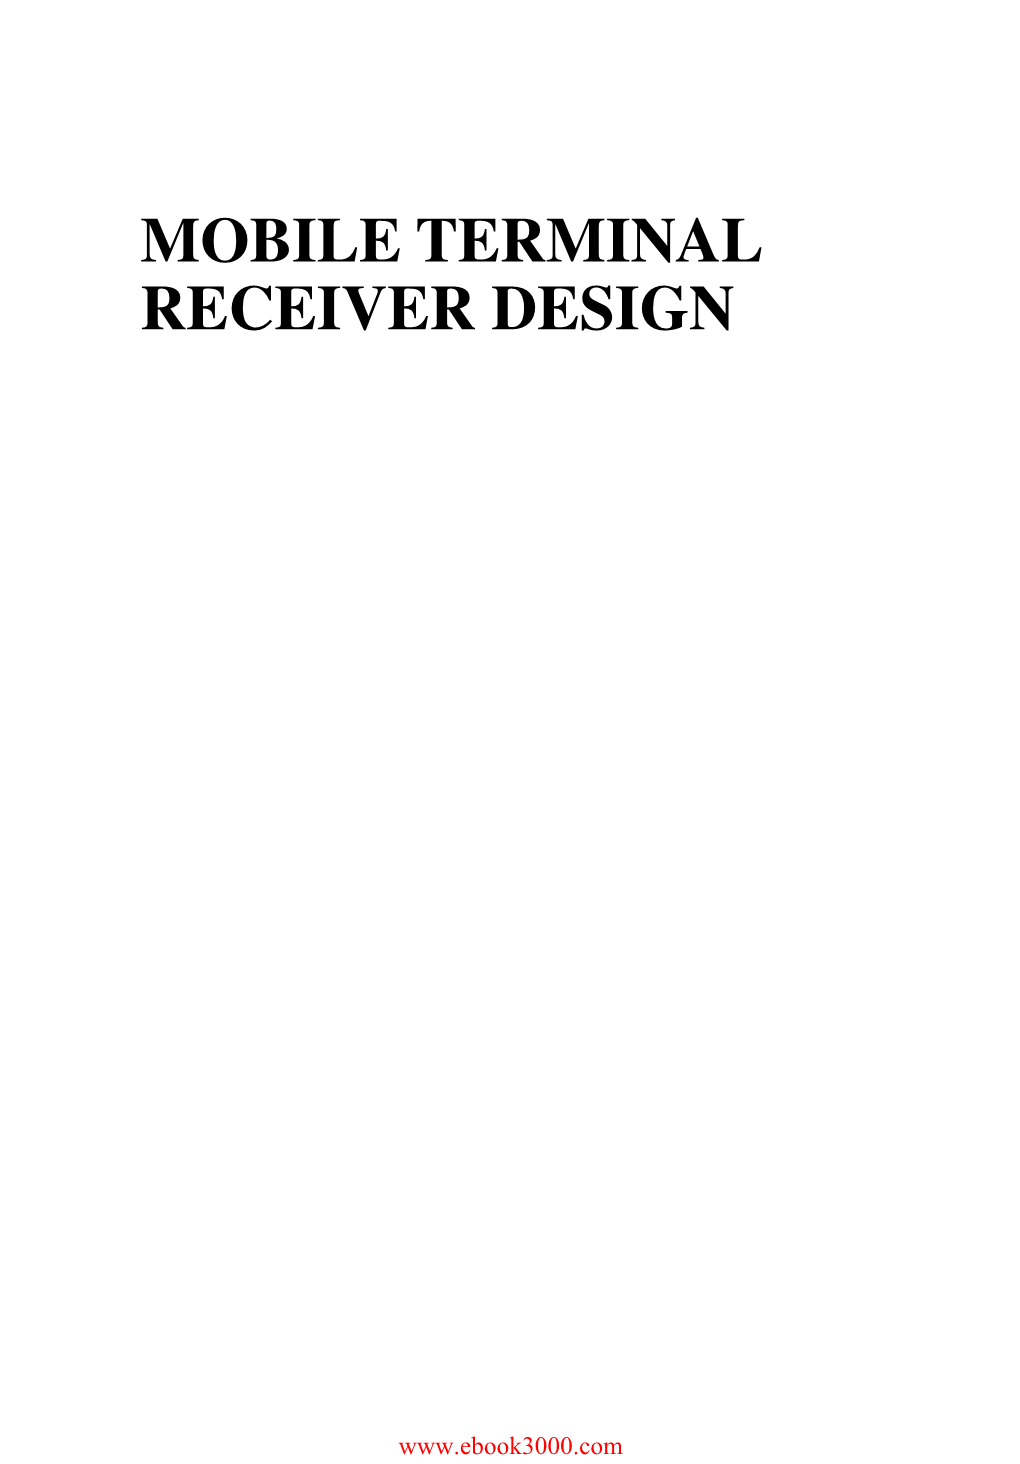 Mobile Terminal Receiver Design